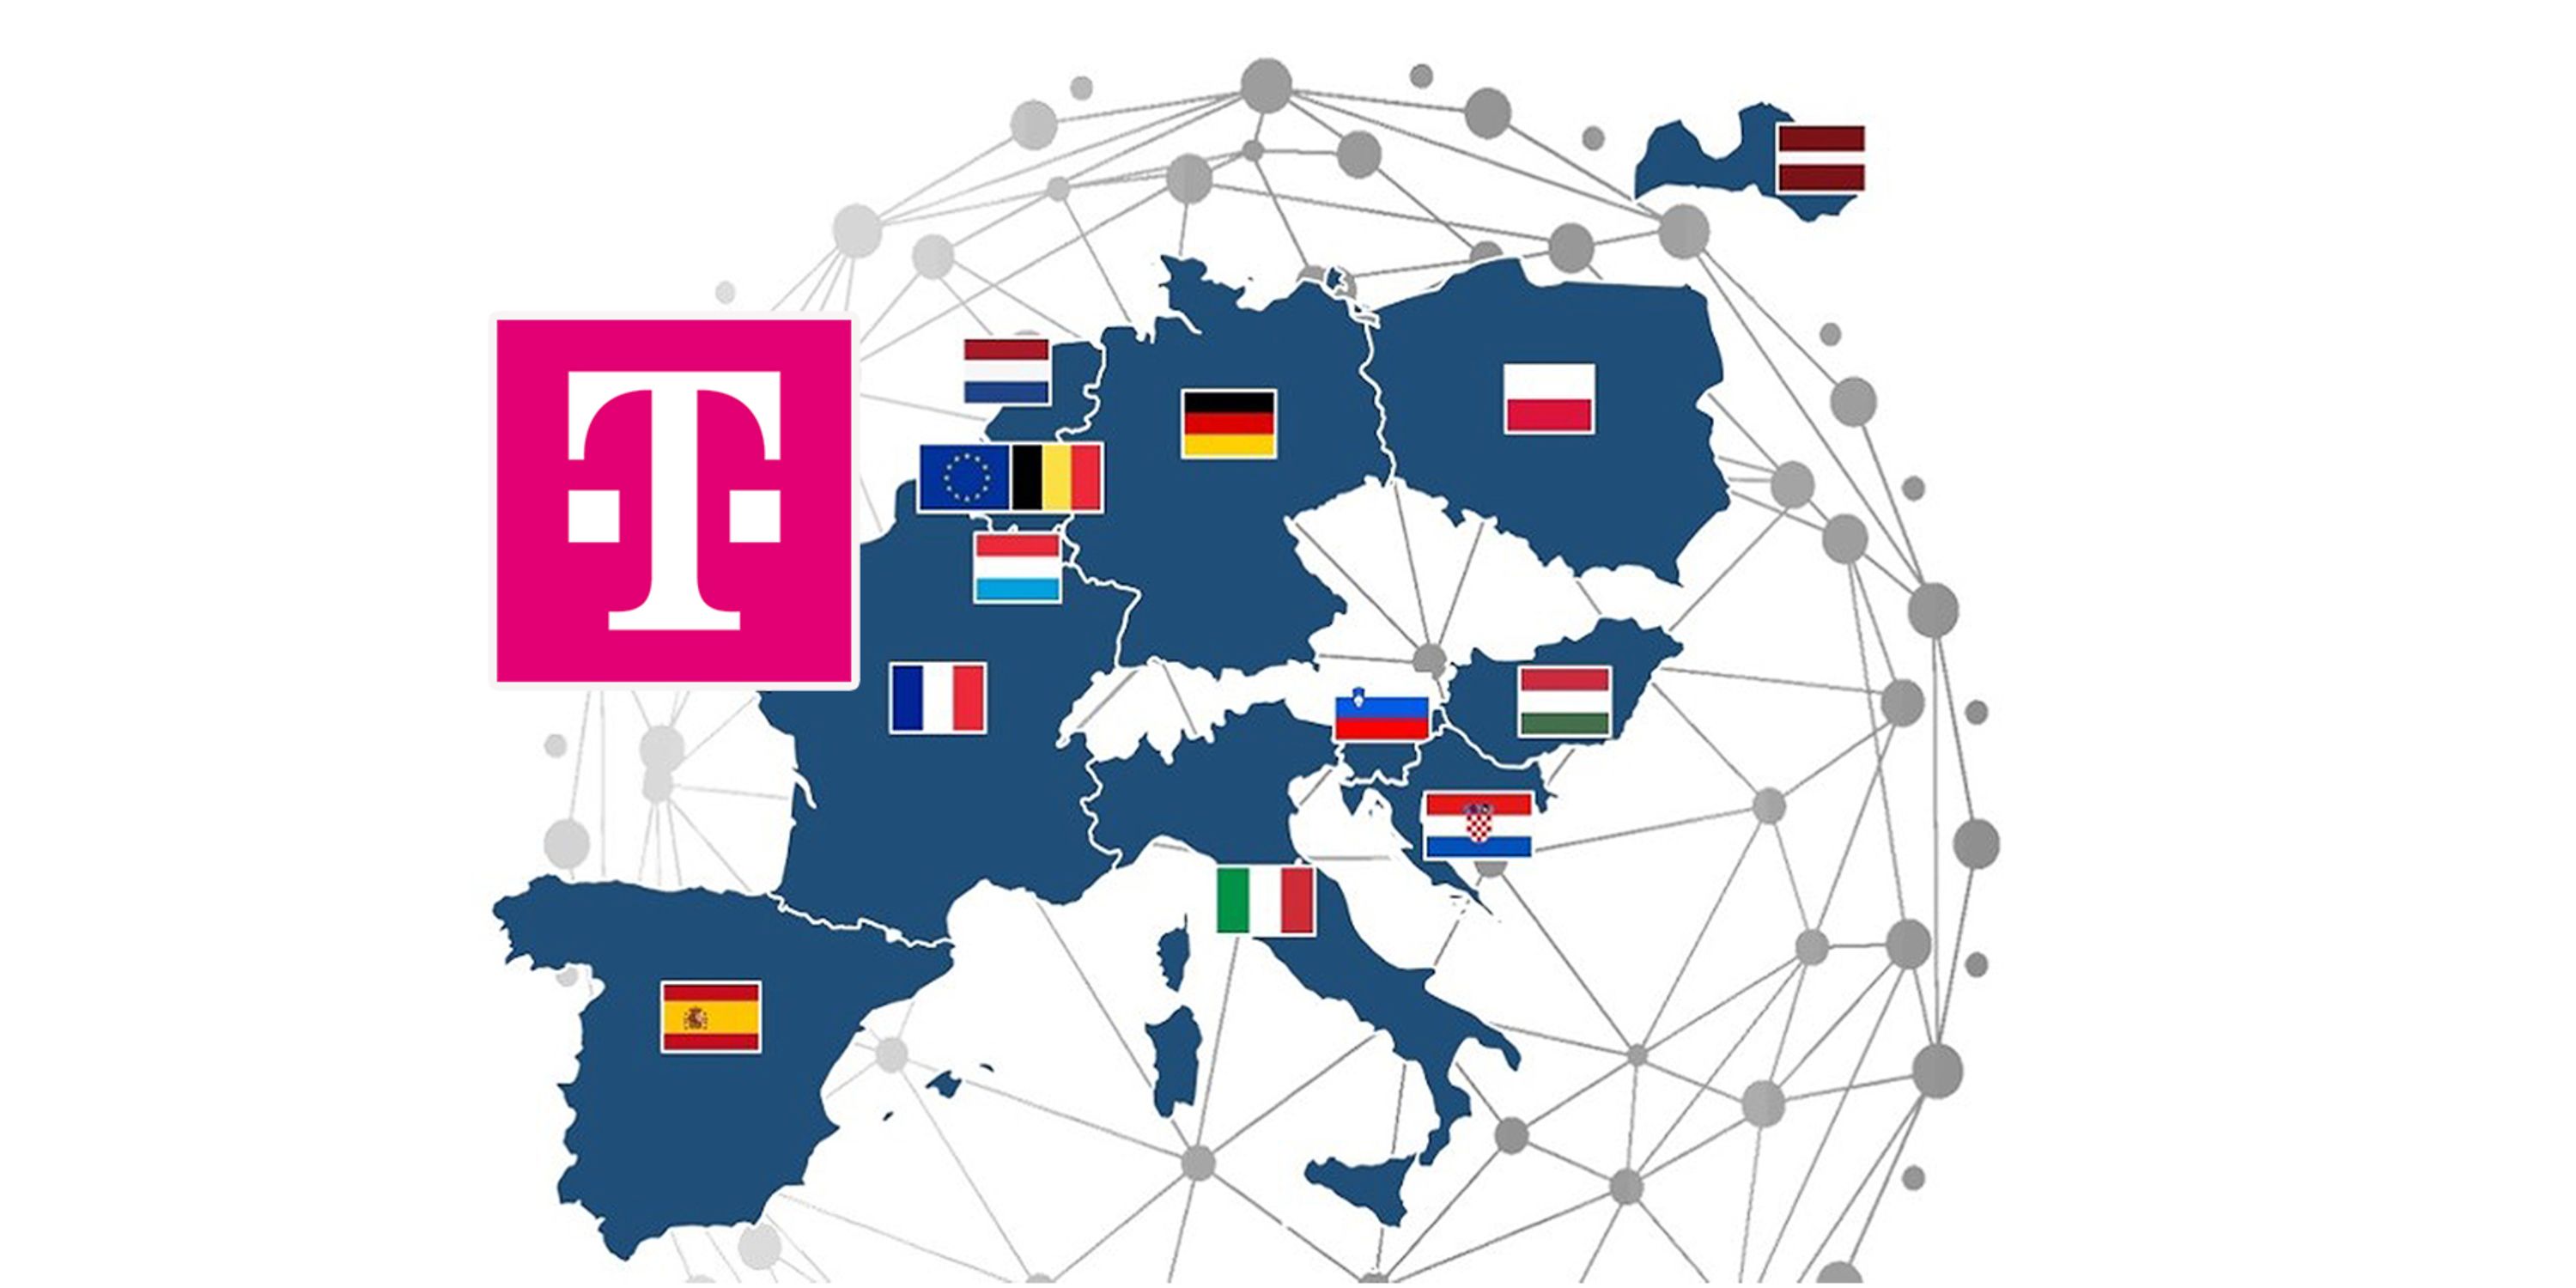 Deutsche Telekom joins project to build future of European Cloud-Edge infrastructure